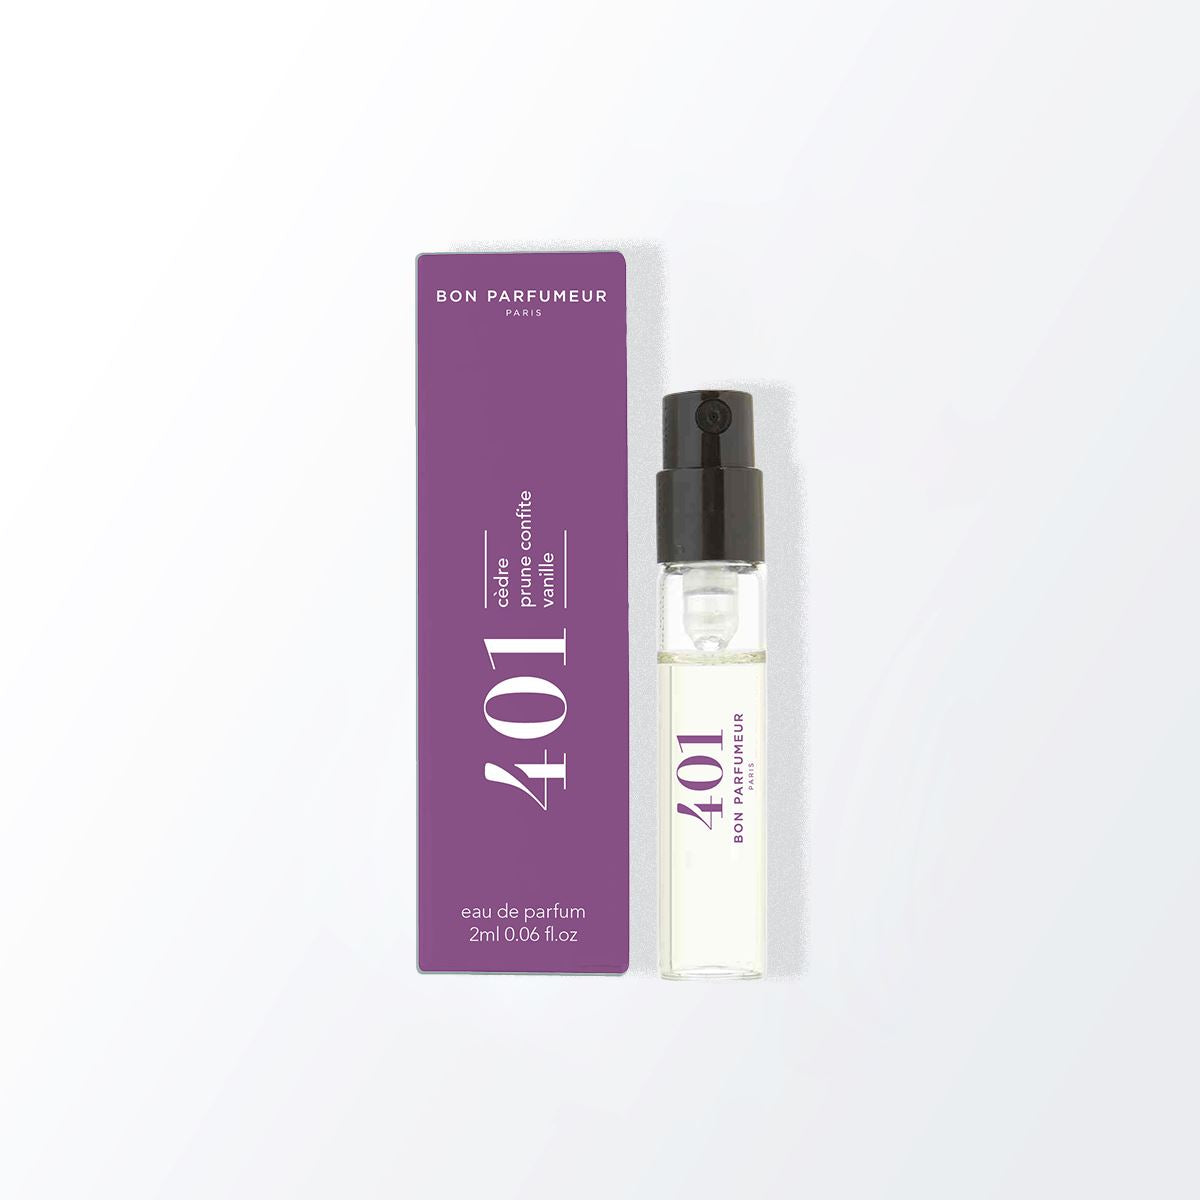 Spray parfumé payant Bon Parfumeur 401: Cèdre, prune confite, vanille 